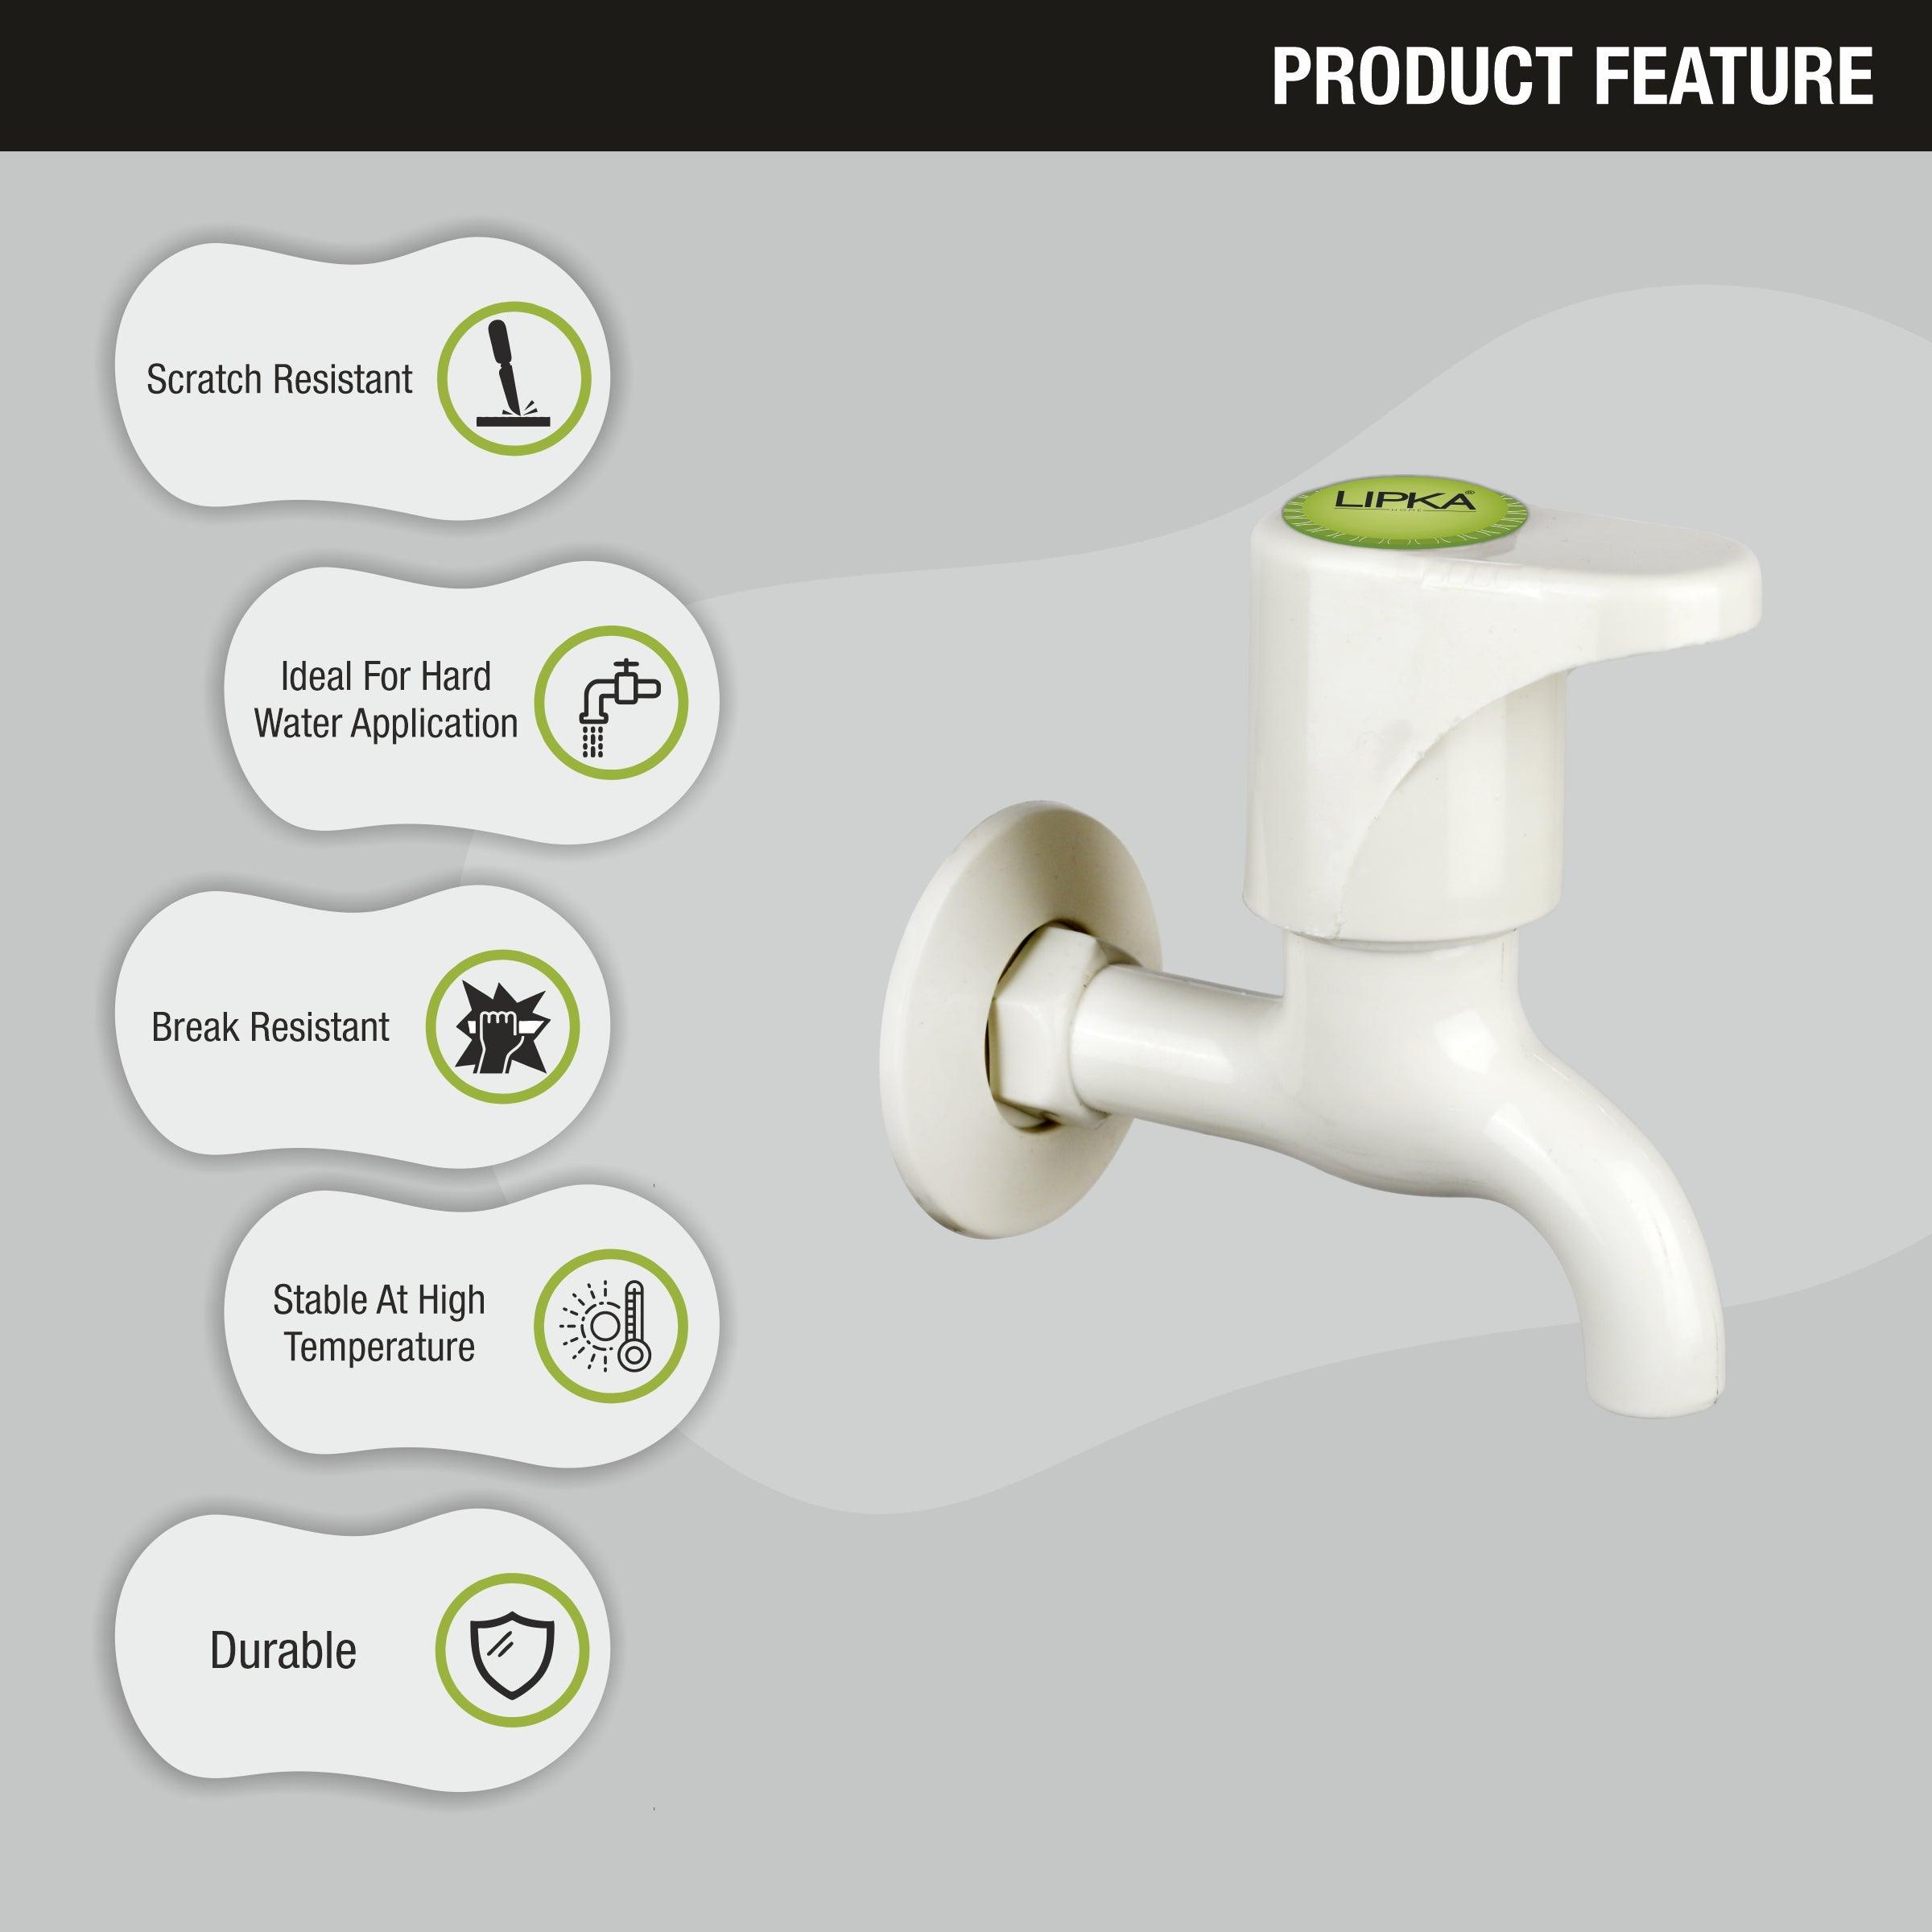 Designo Bib Tap PTMT Faucet features